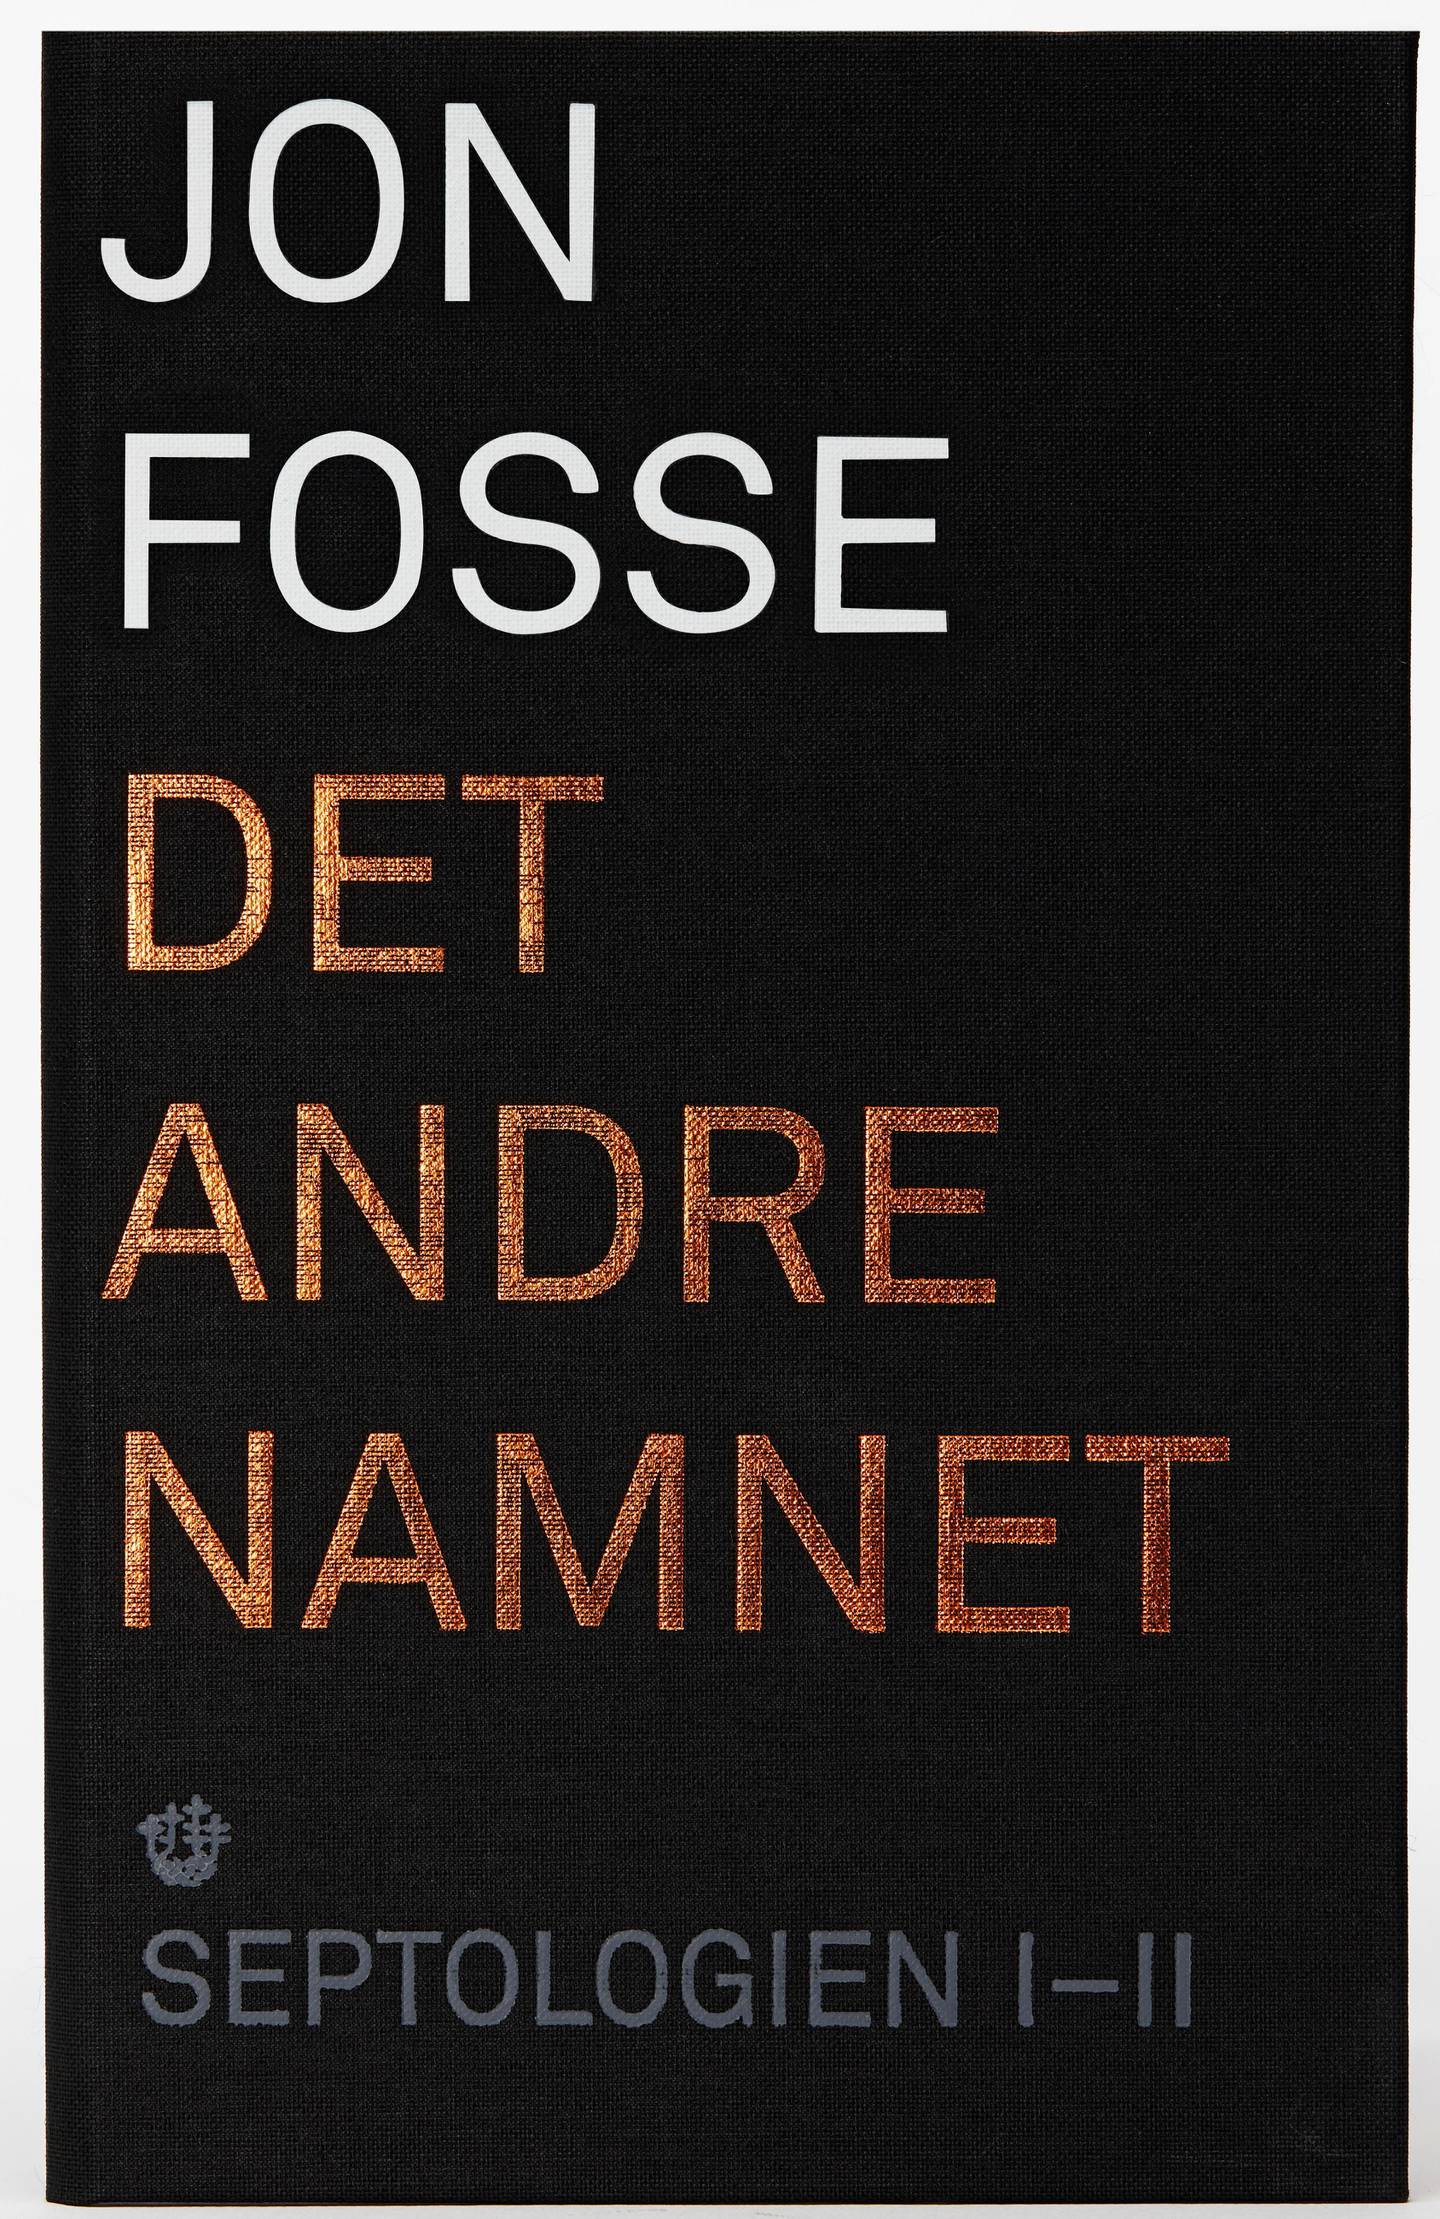 Første del i Jon Fosses store romanverk «Septologien» utgis 6. september 2019